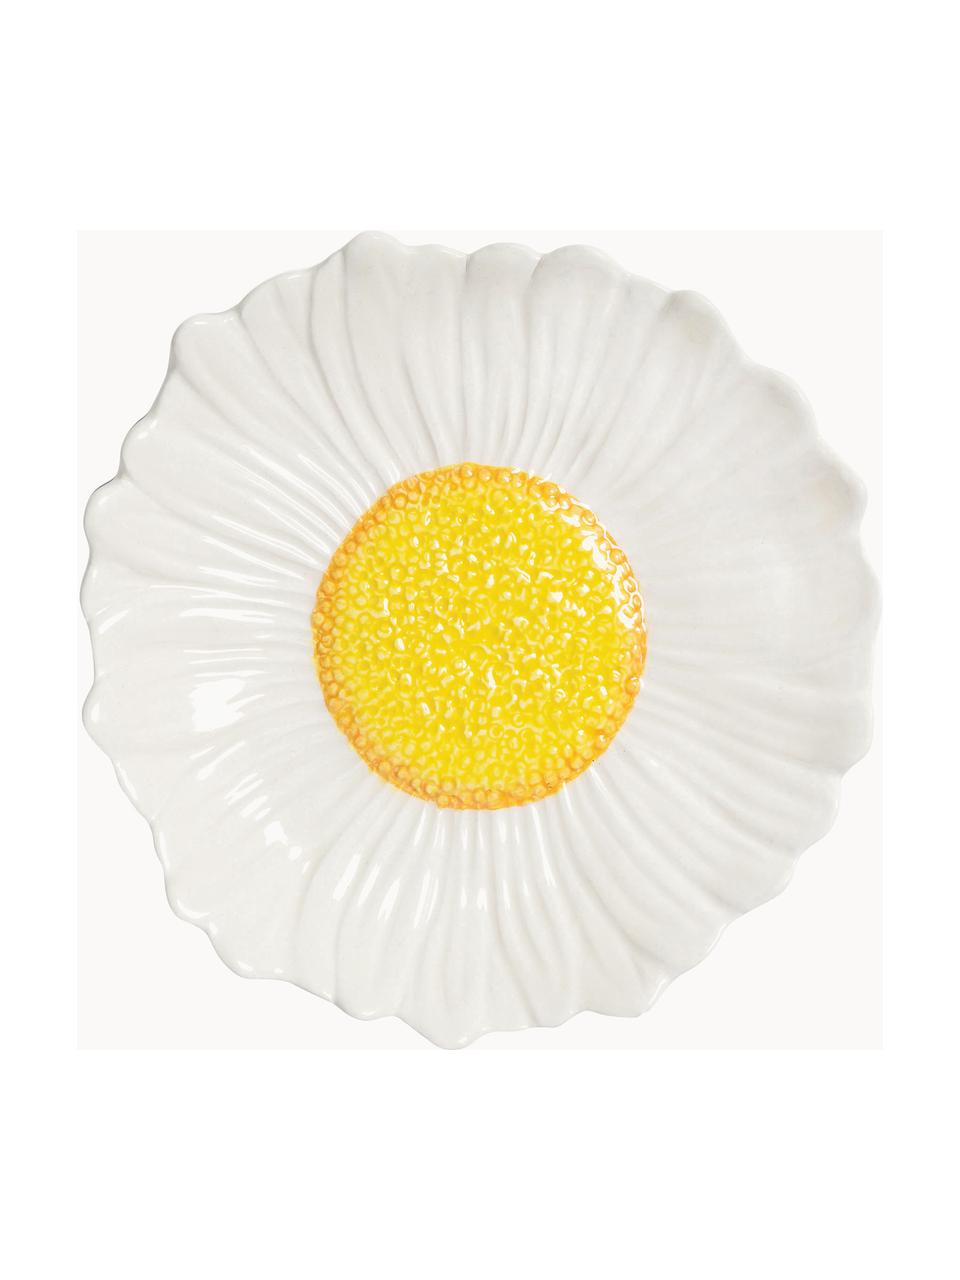 Bol flor margarita Flower, Cerámica de gres esmaltada, Blanco, amarillo sol, en forma de margarita, Ø 18 x Al 4 cm